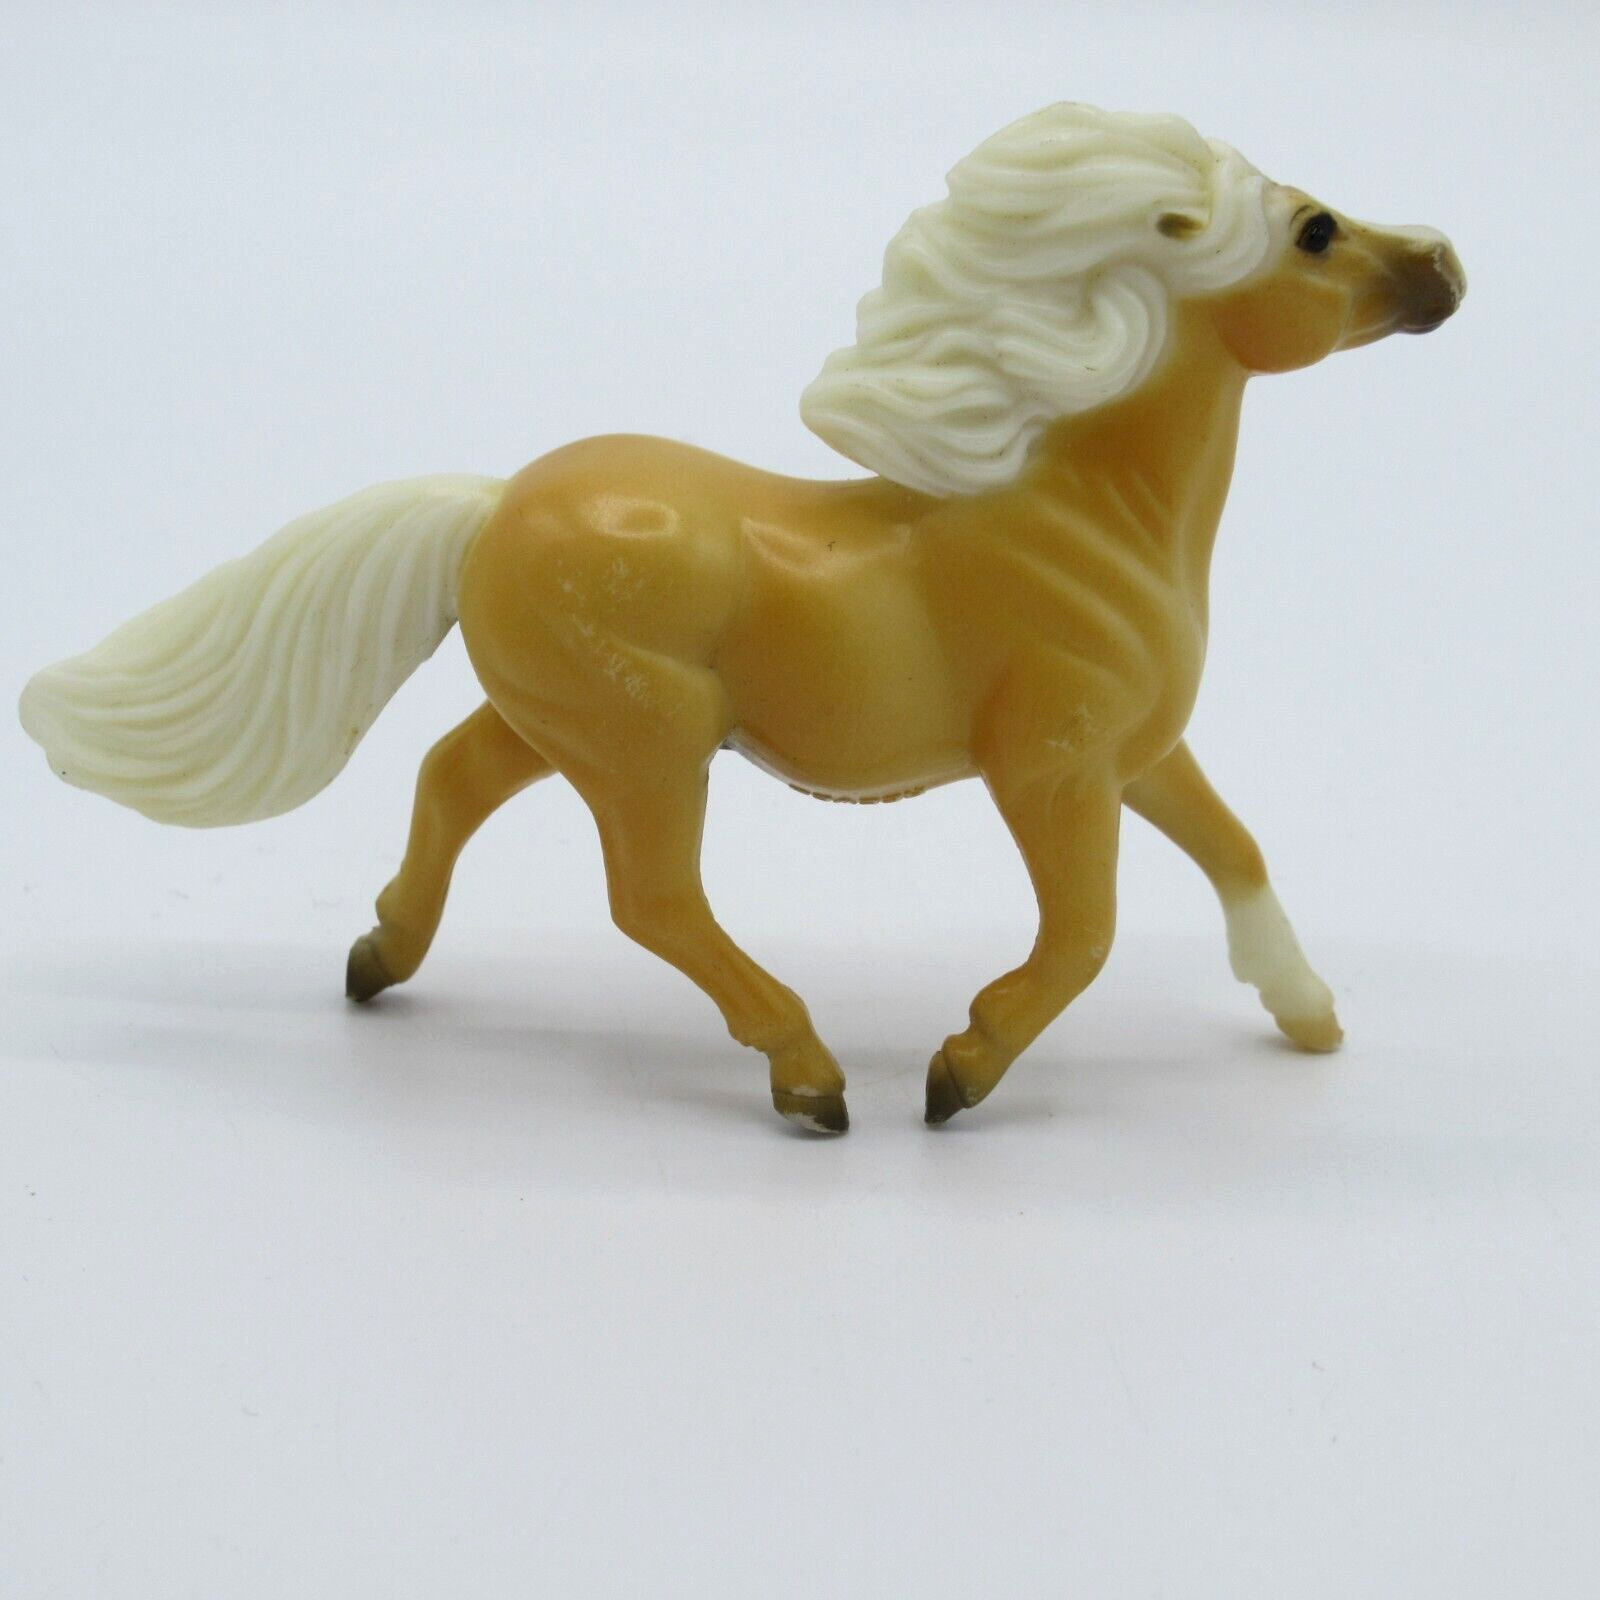 BREYER Reeves Mini Horse 3”  Vintage 1999 Tan White Pony Toy Figure White Nose